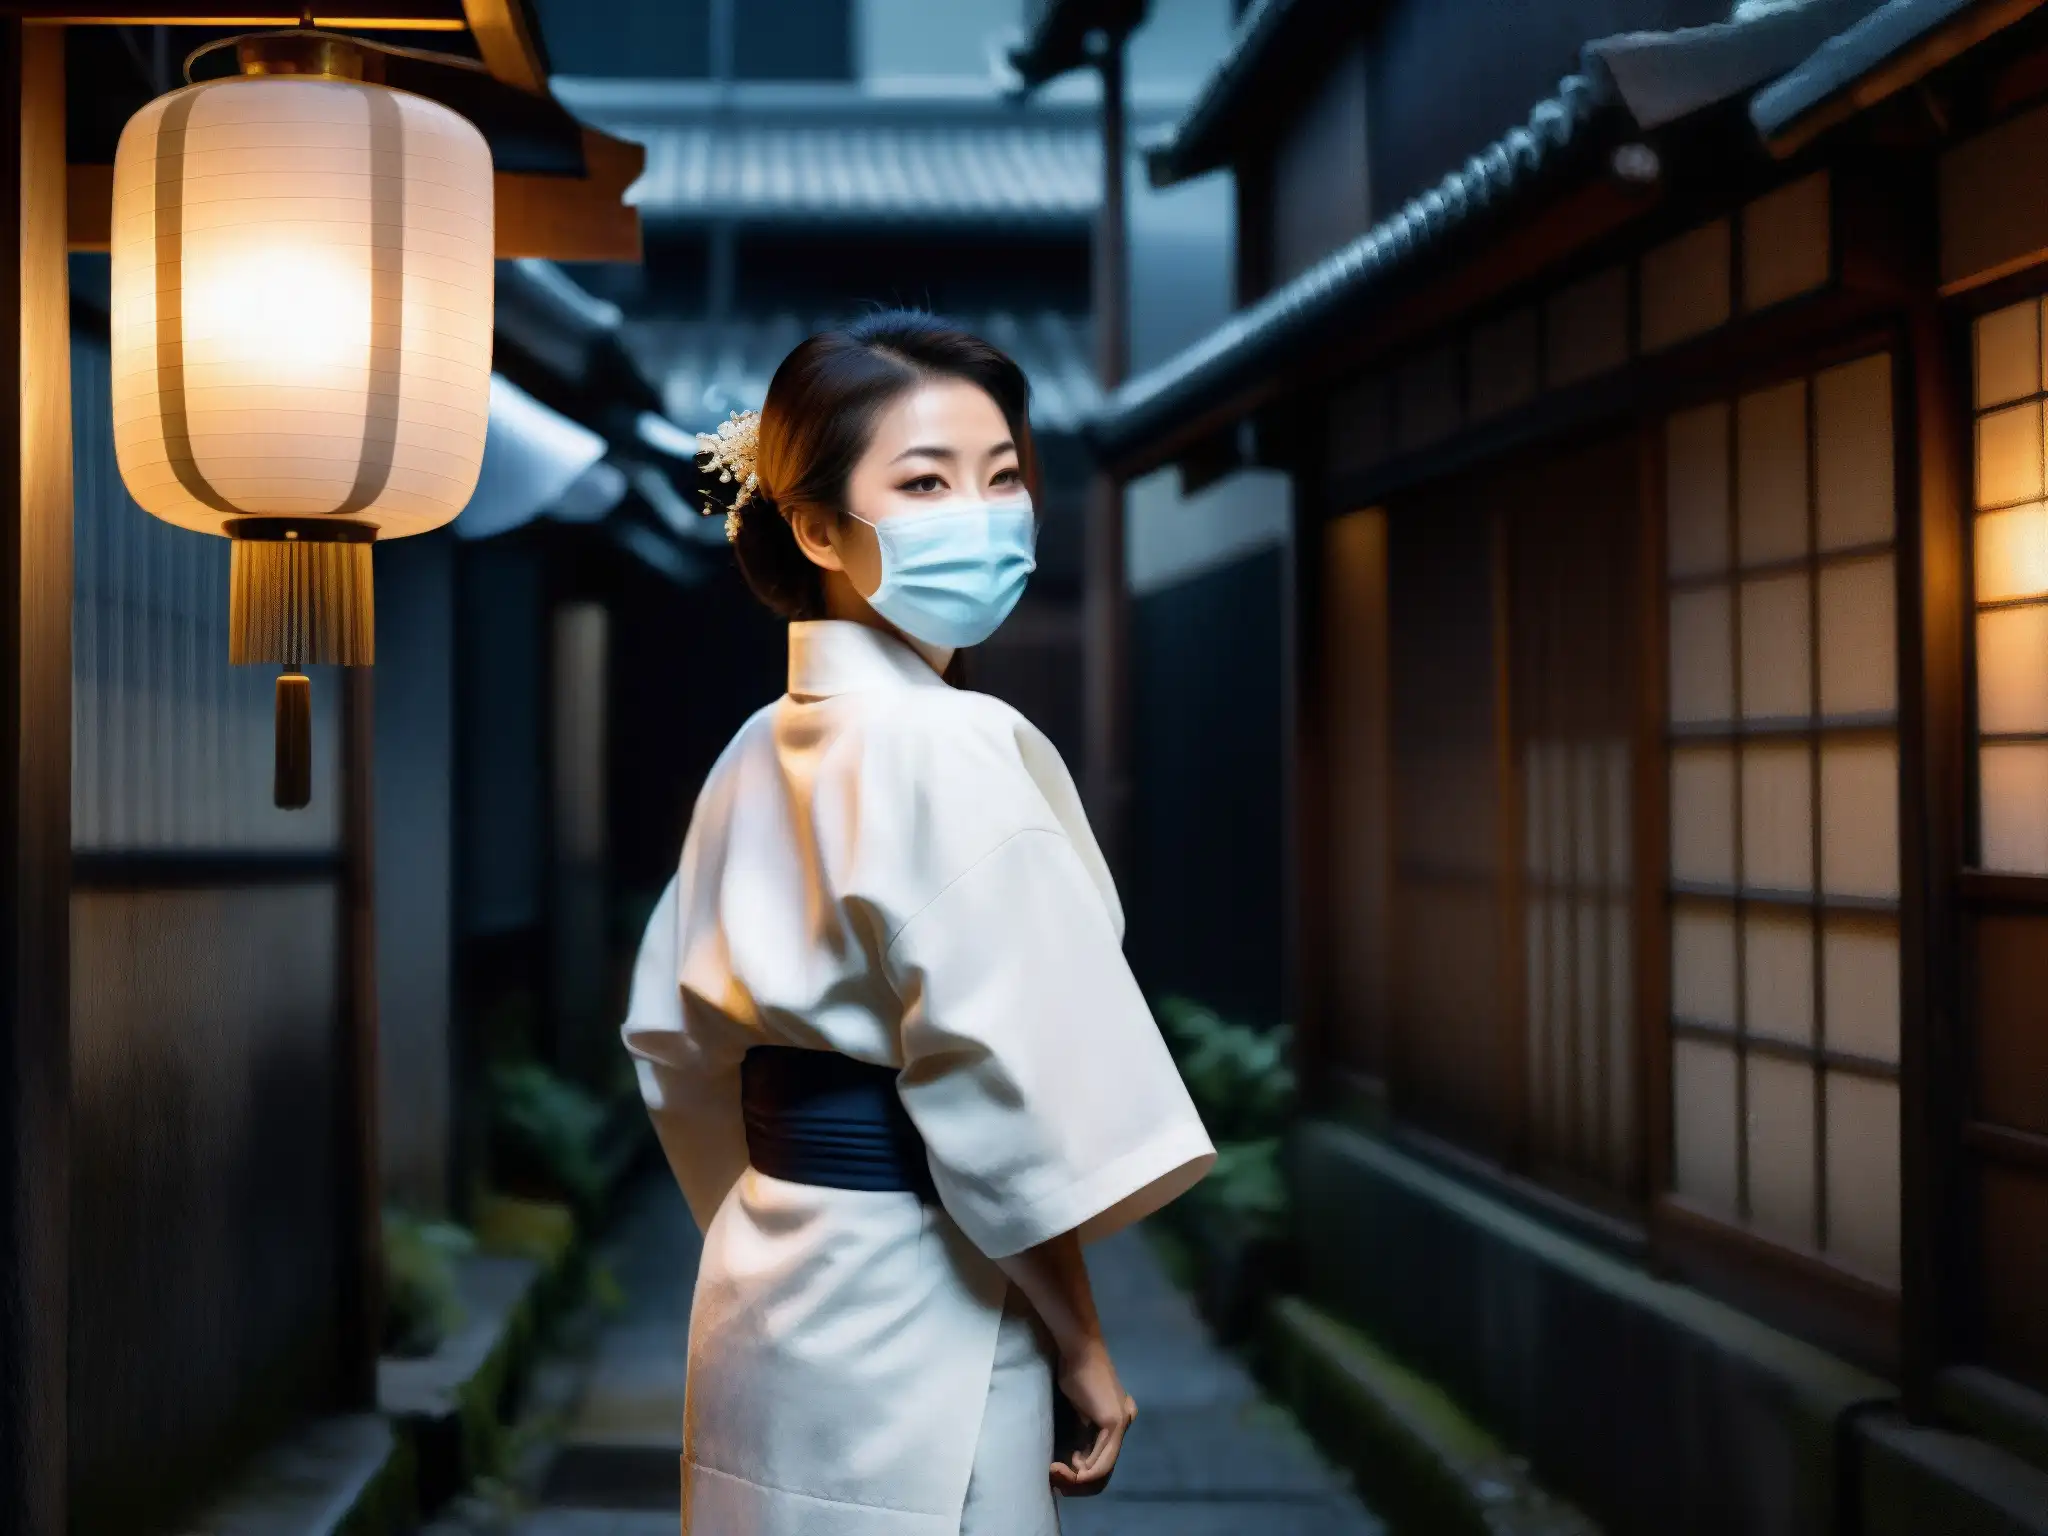 Una mujer japonesa con kimono blanco y máscara quirúrgica, de mirada penetrante en un callejón oscuro